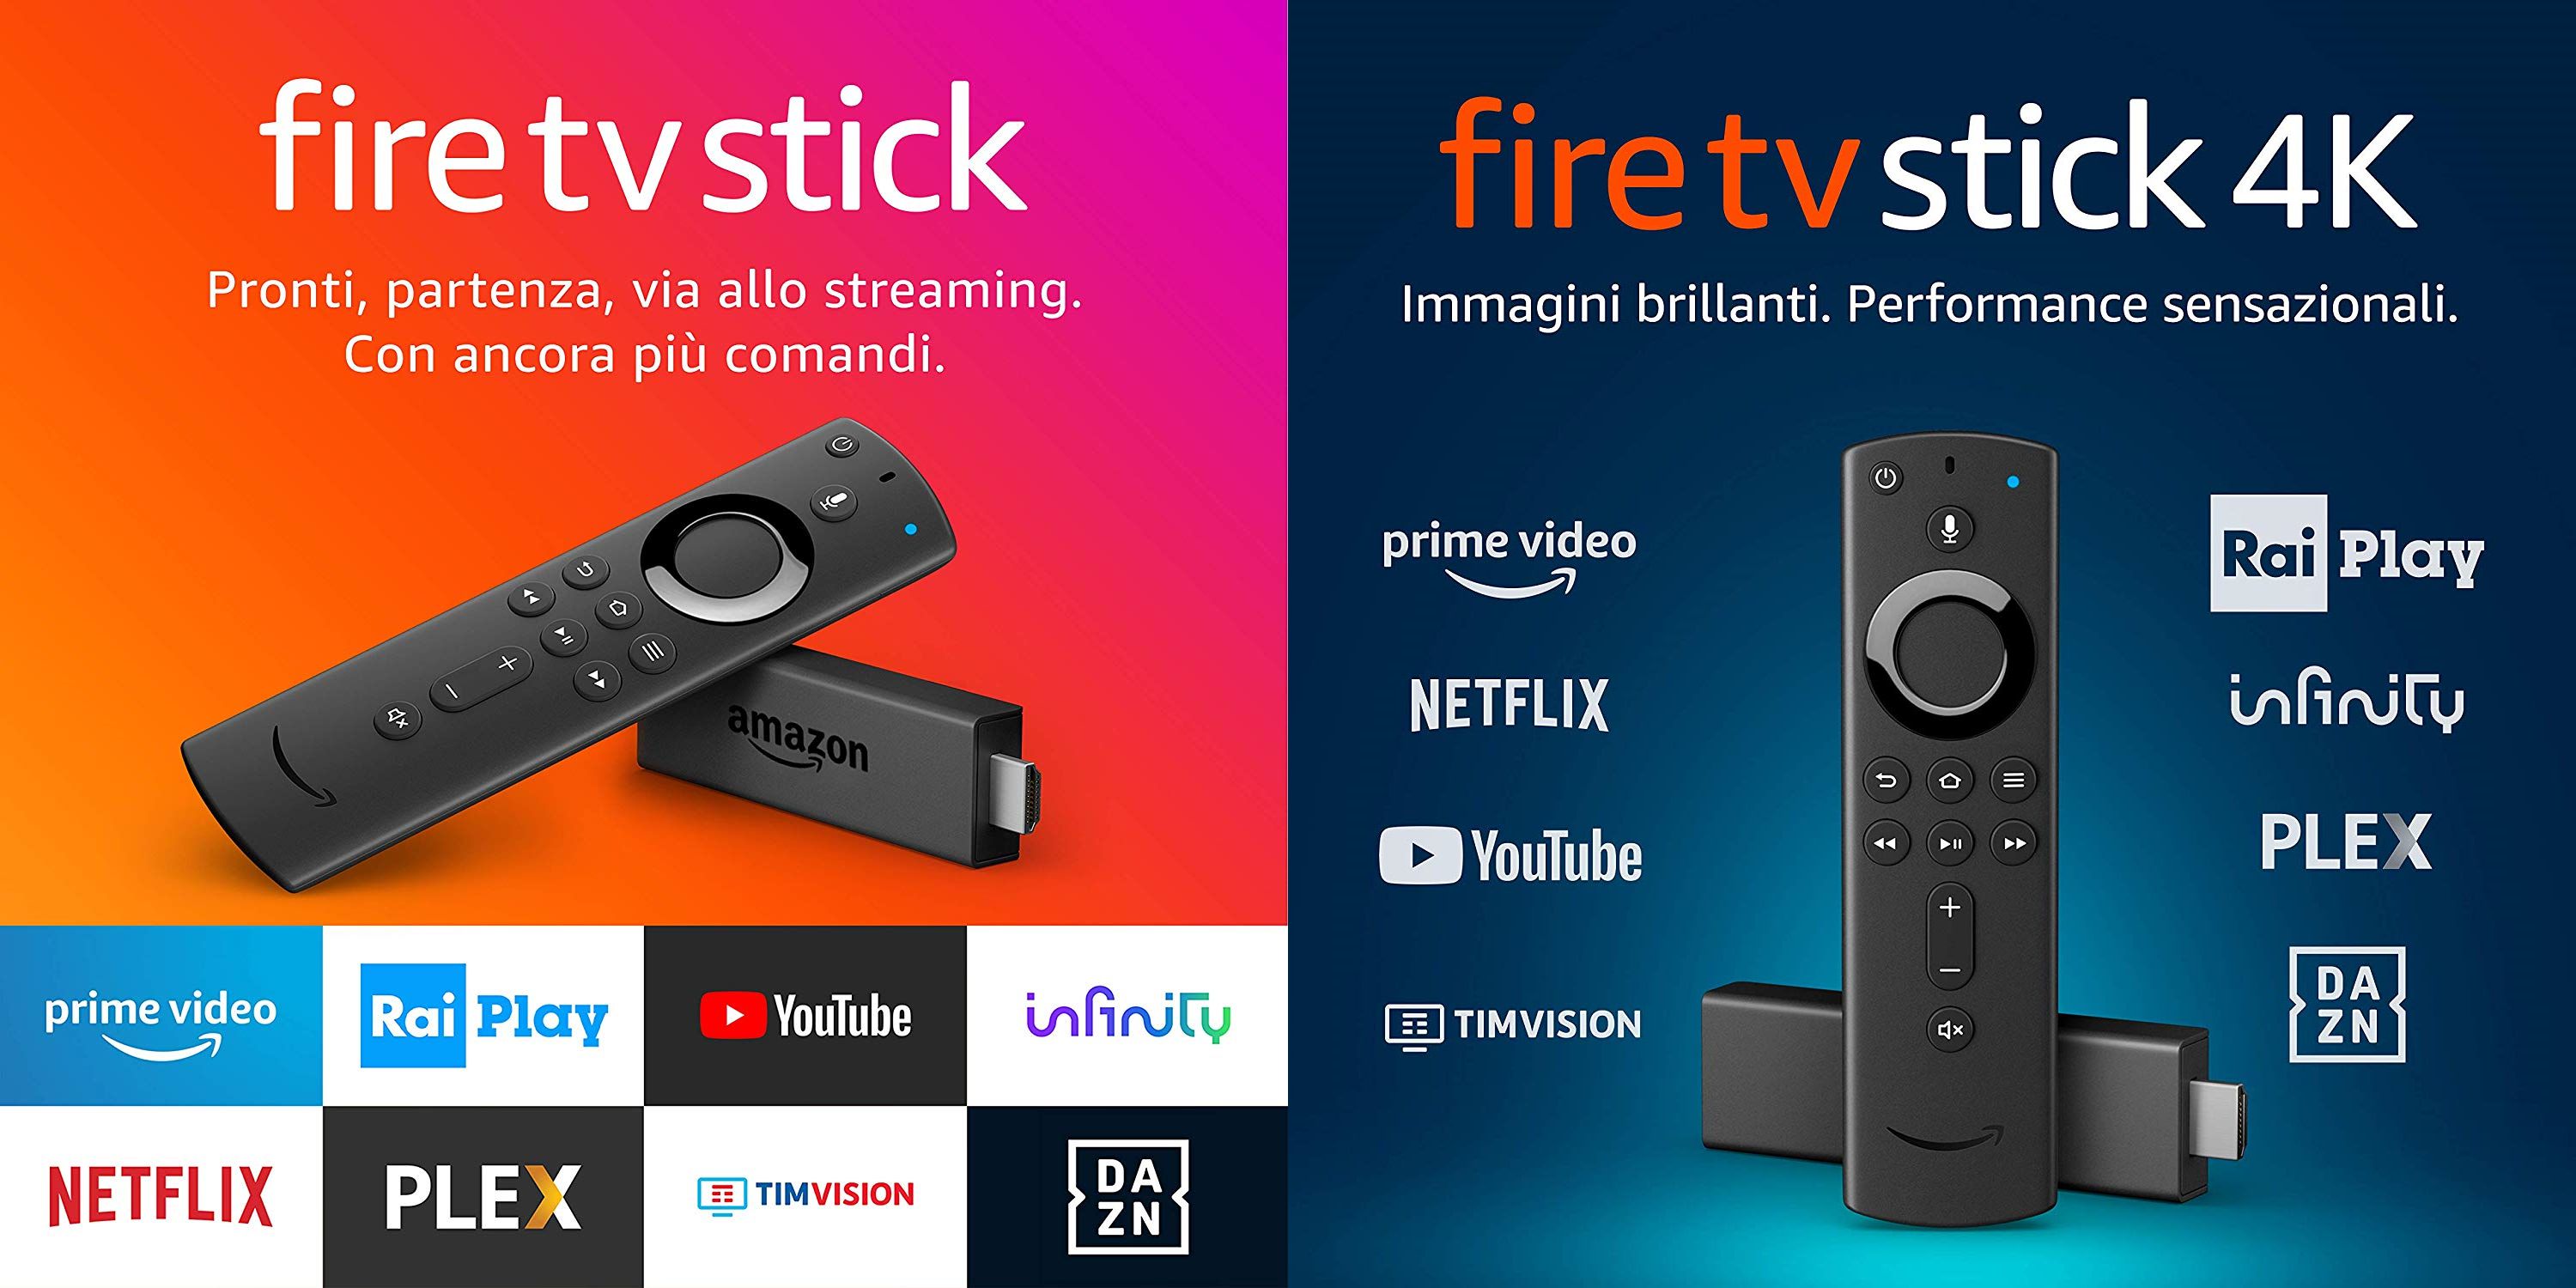 La Fire TV Stick 4K finalmente arriva in Italia: ottime caratteristiche e prezzo al top